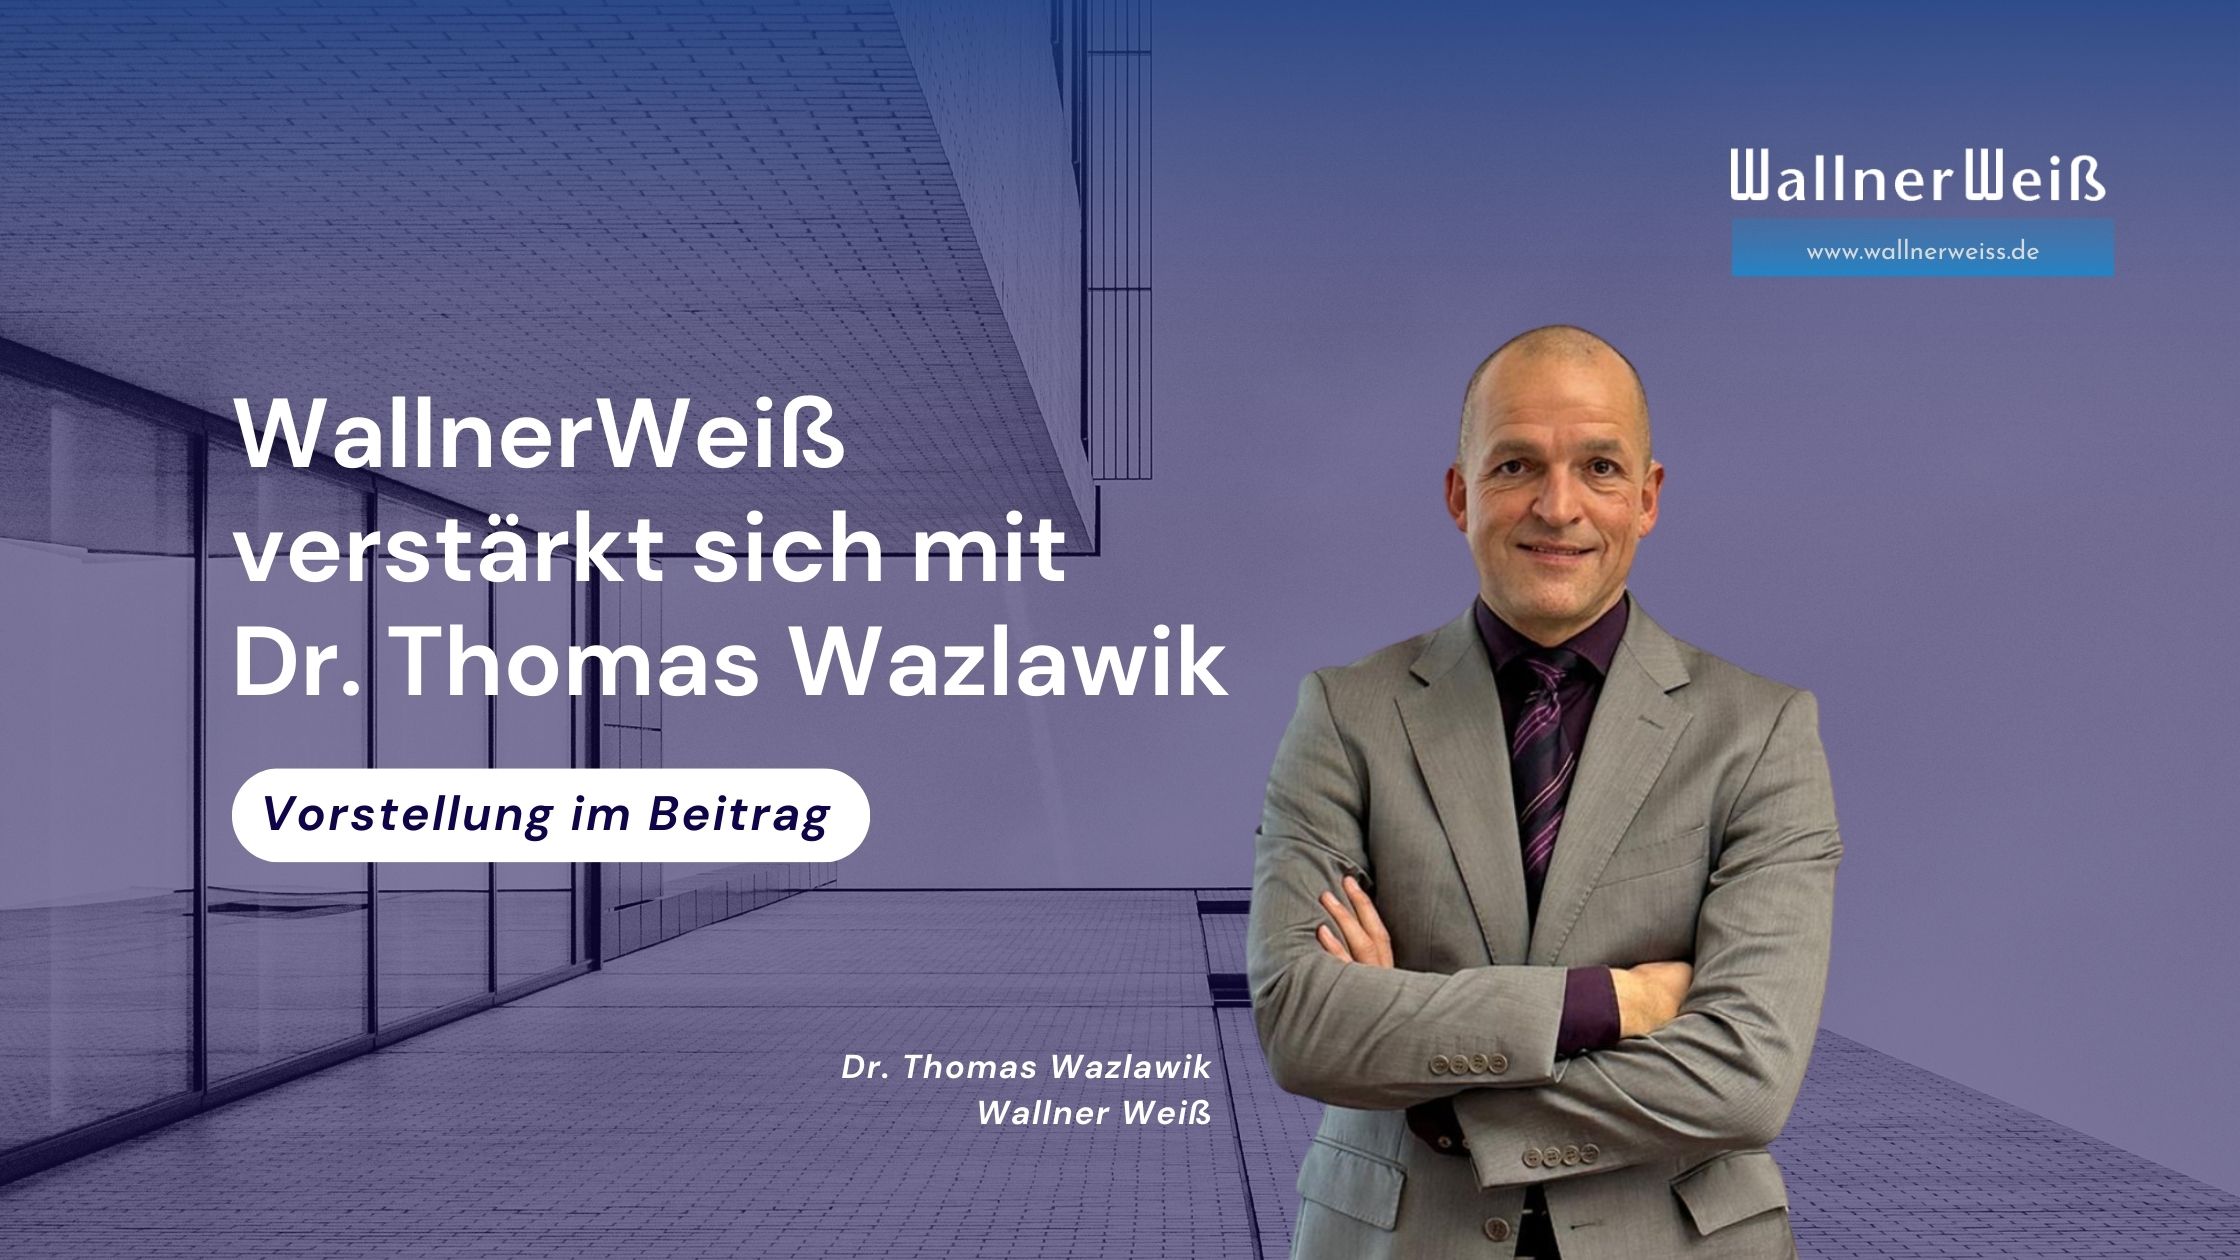 WallnerWeiß verstärkt sich mit Dr. Thomas Wazlawik